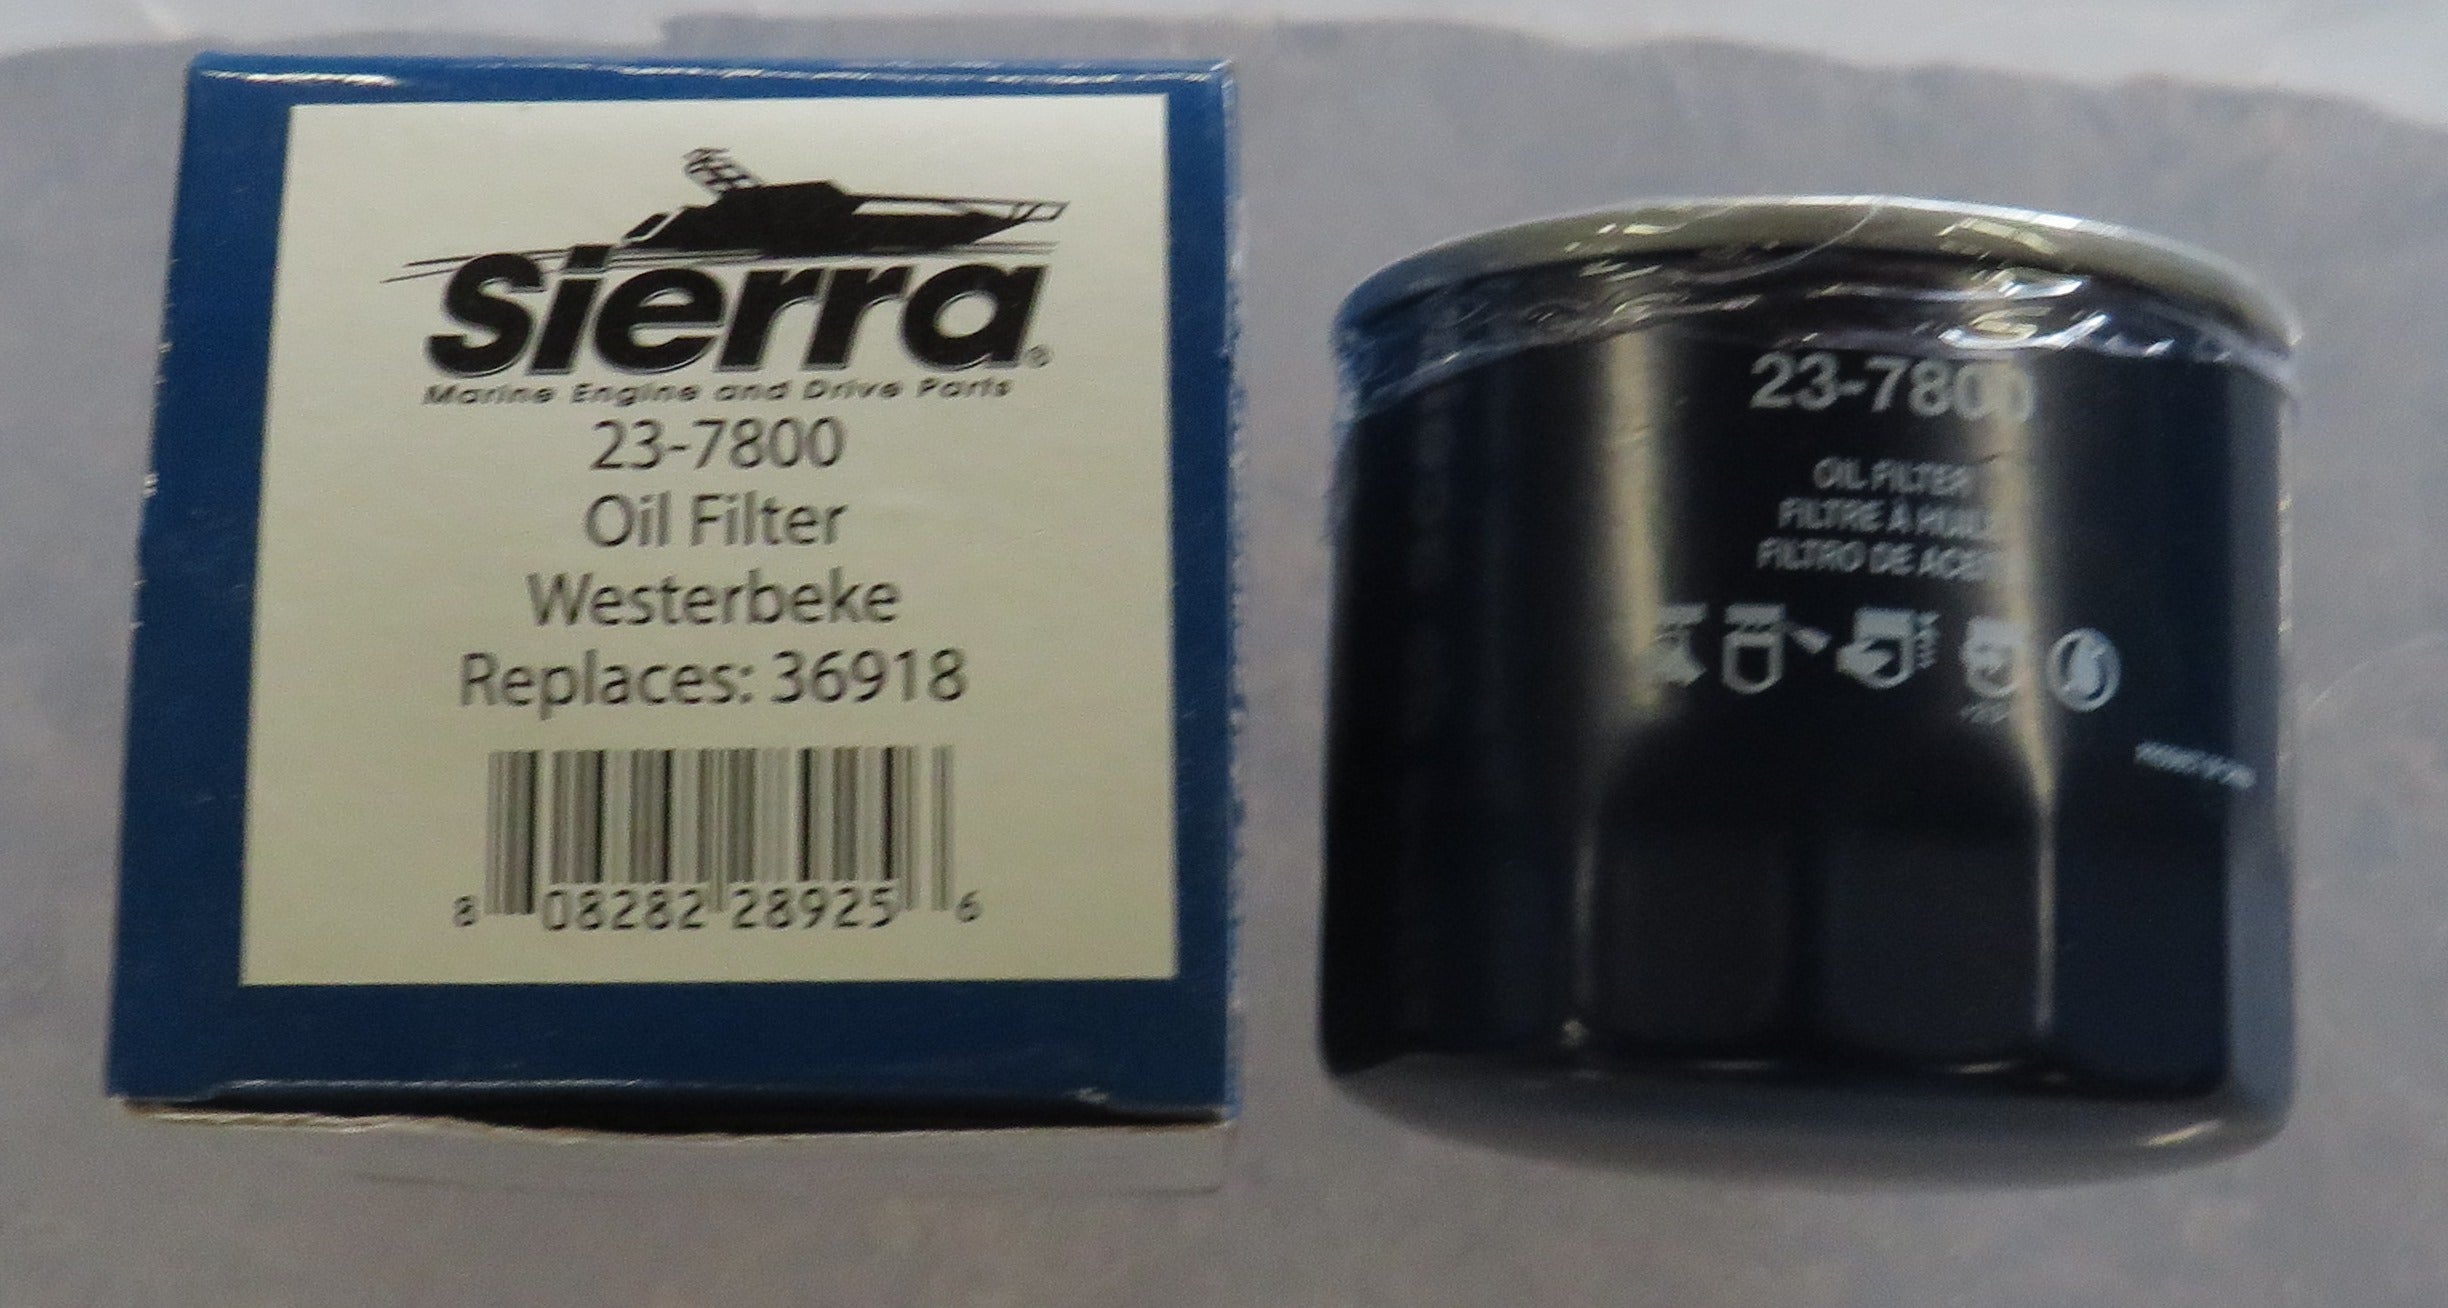 36918 Westerbeke Oil Filter Replaced by Sierra 23-7800